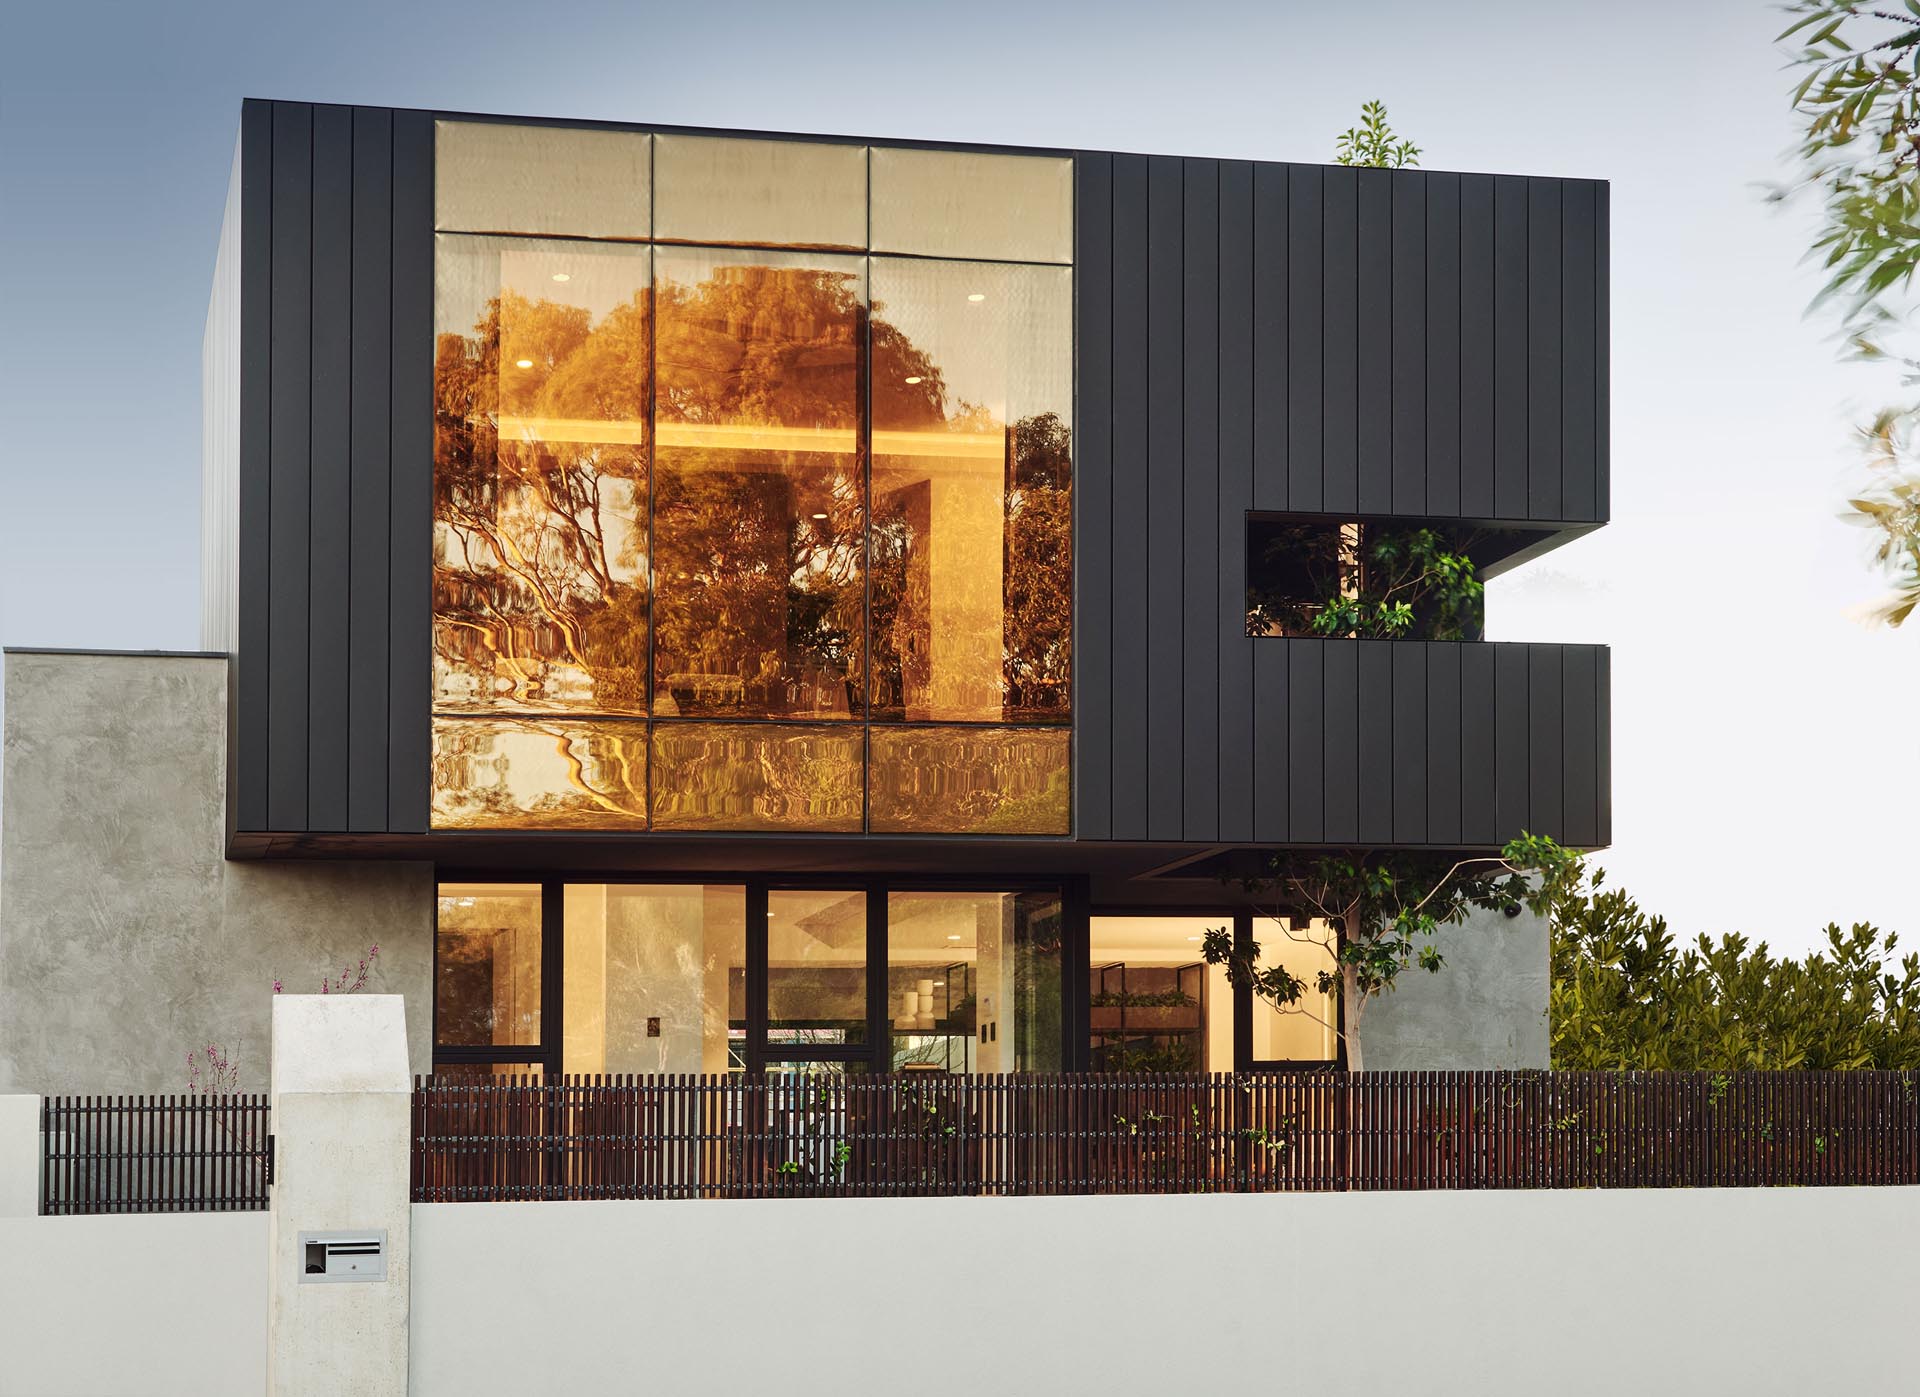 Фасад этого современного дома отличается супербронзовой стеной с двойным остеклением, которая сочетается с матовым сайдингом.